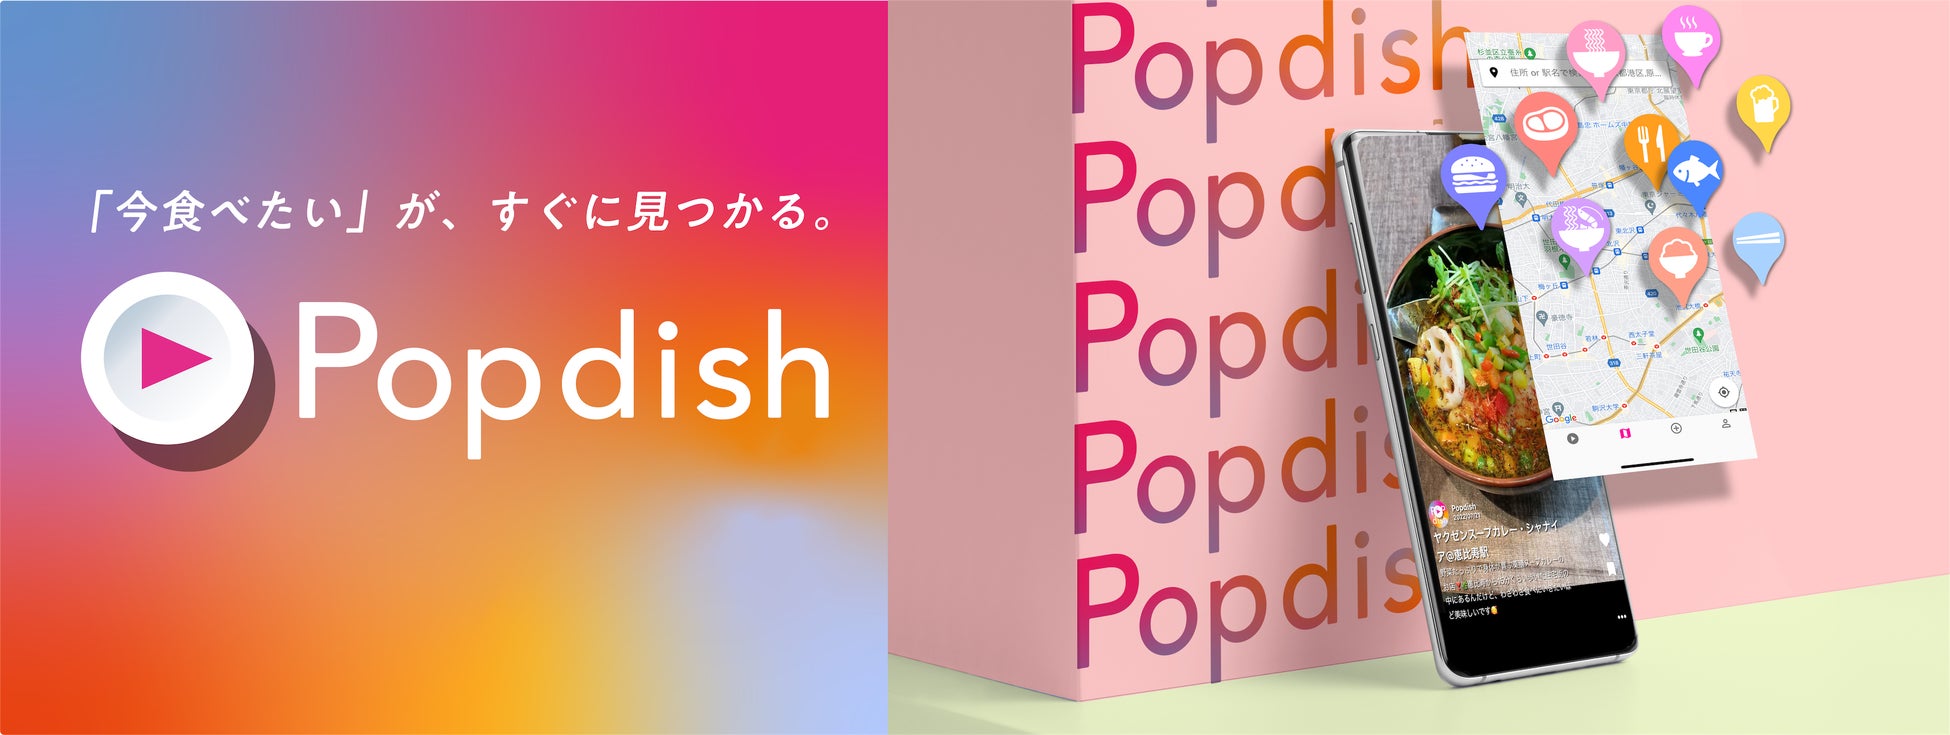 Z世代向けのスマホ縦型グルメ動画SNSアプリ「Popdish（ポップディッシュ）」を運営する、株式会社NOBU Planningが初回の資金調達を実施。サービスのβ版をリリース。